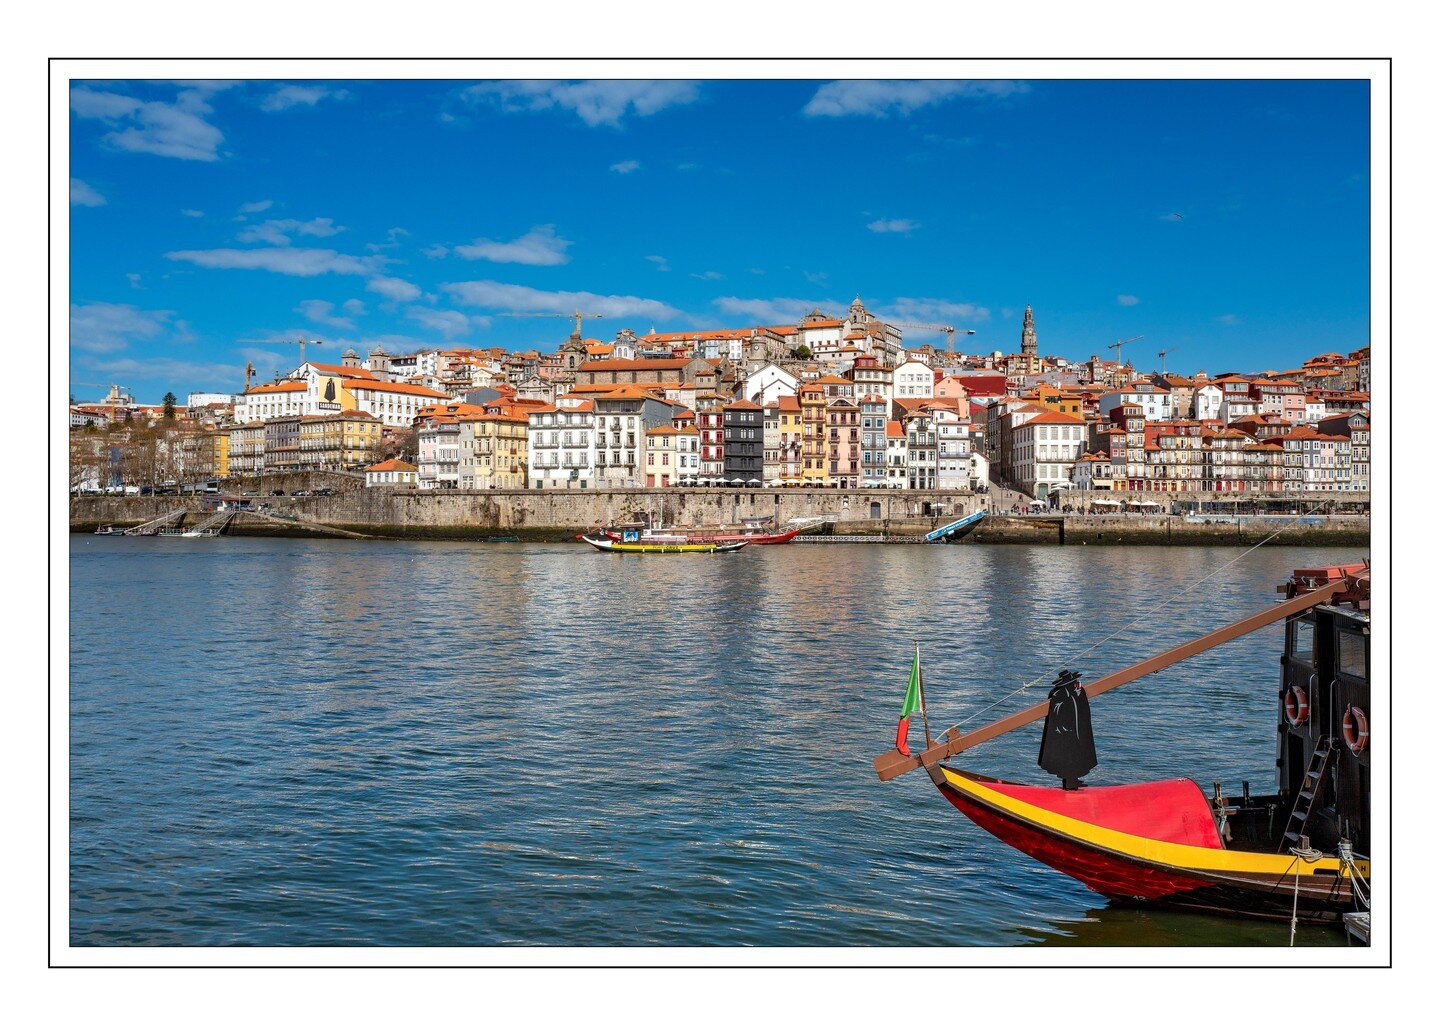 Oude centrum Porto, Portugal.
.
.
.
.
.
.
#porto #portugal #portugal🇵🇹 #leicaq #panorama #photostitch #leicaqtyp116 #oldporto #picfee #sandeman #boot #portocentrum #portoportugal #sandemanporto